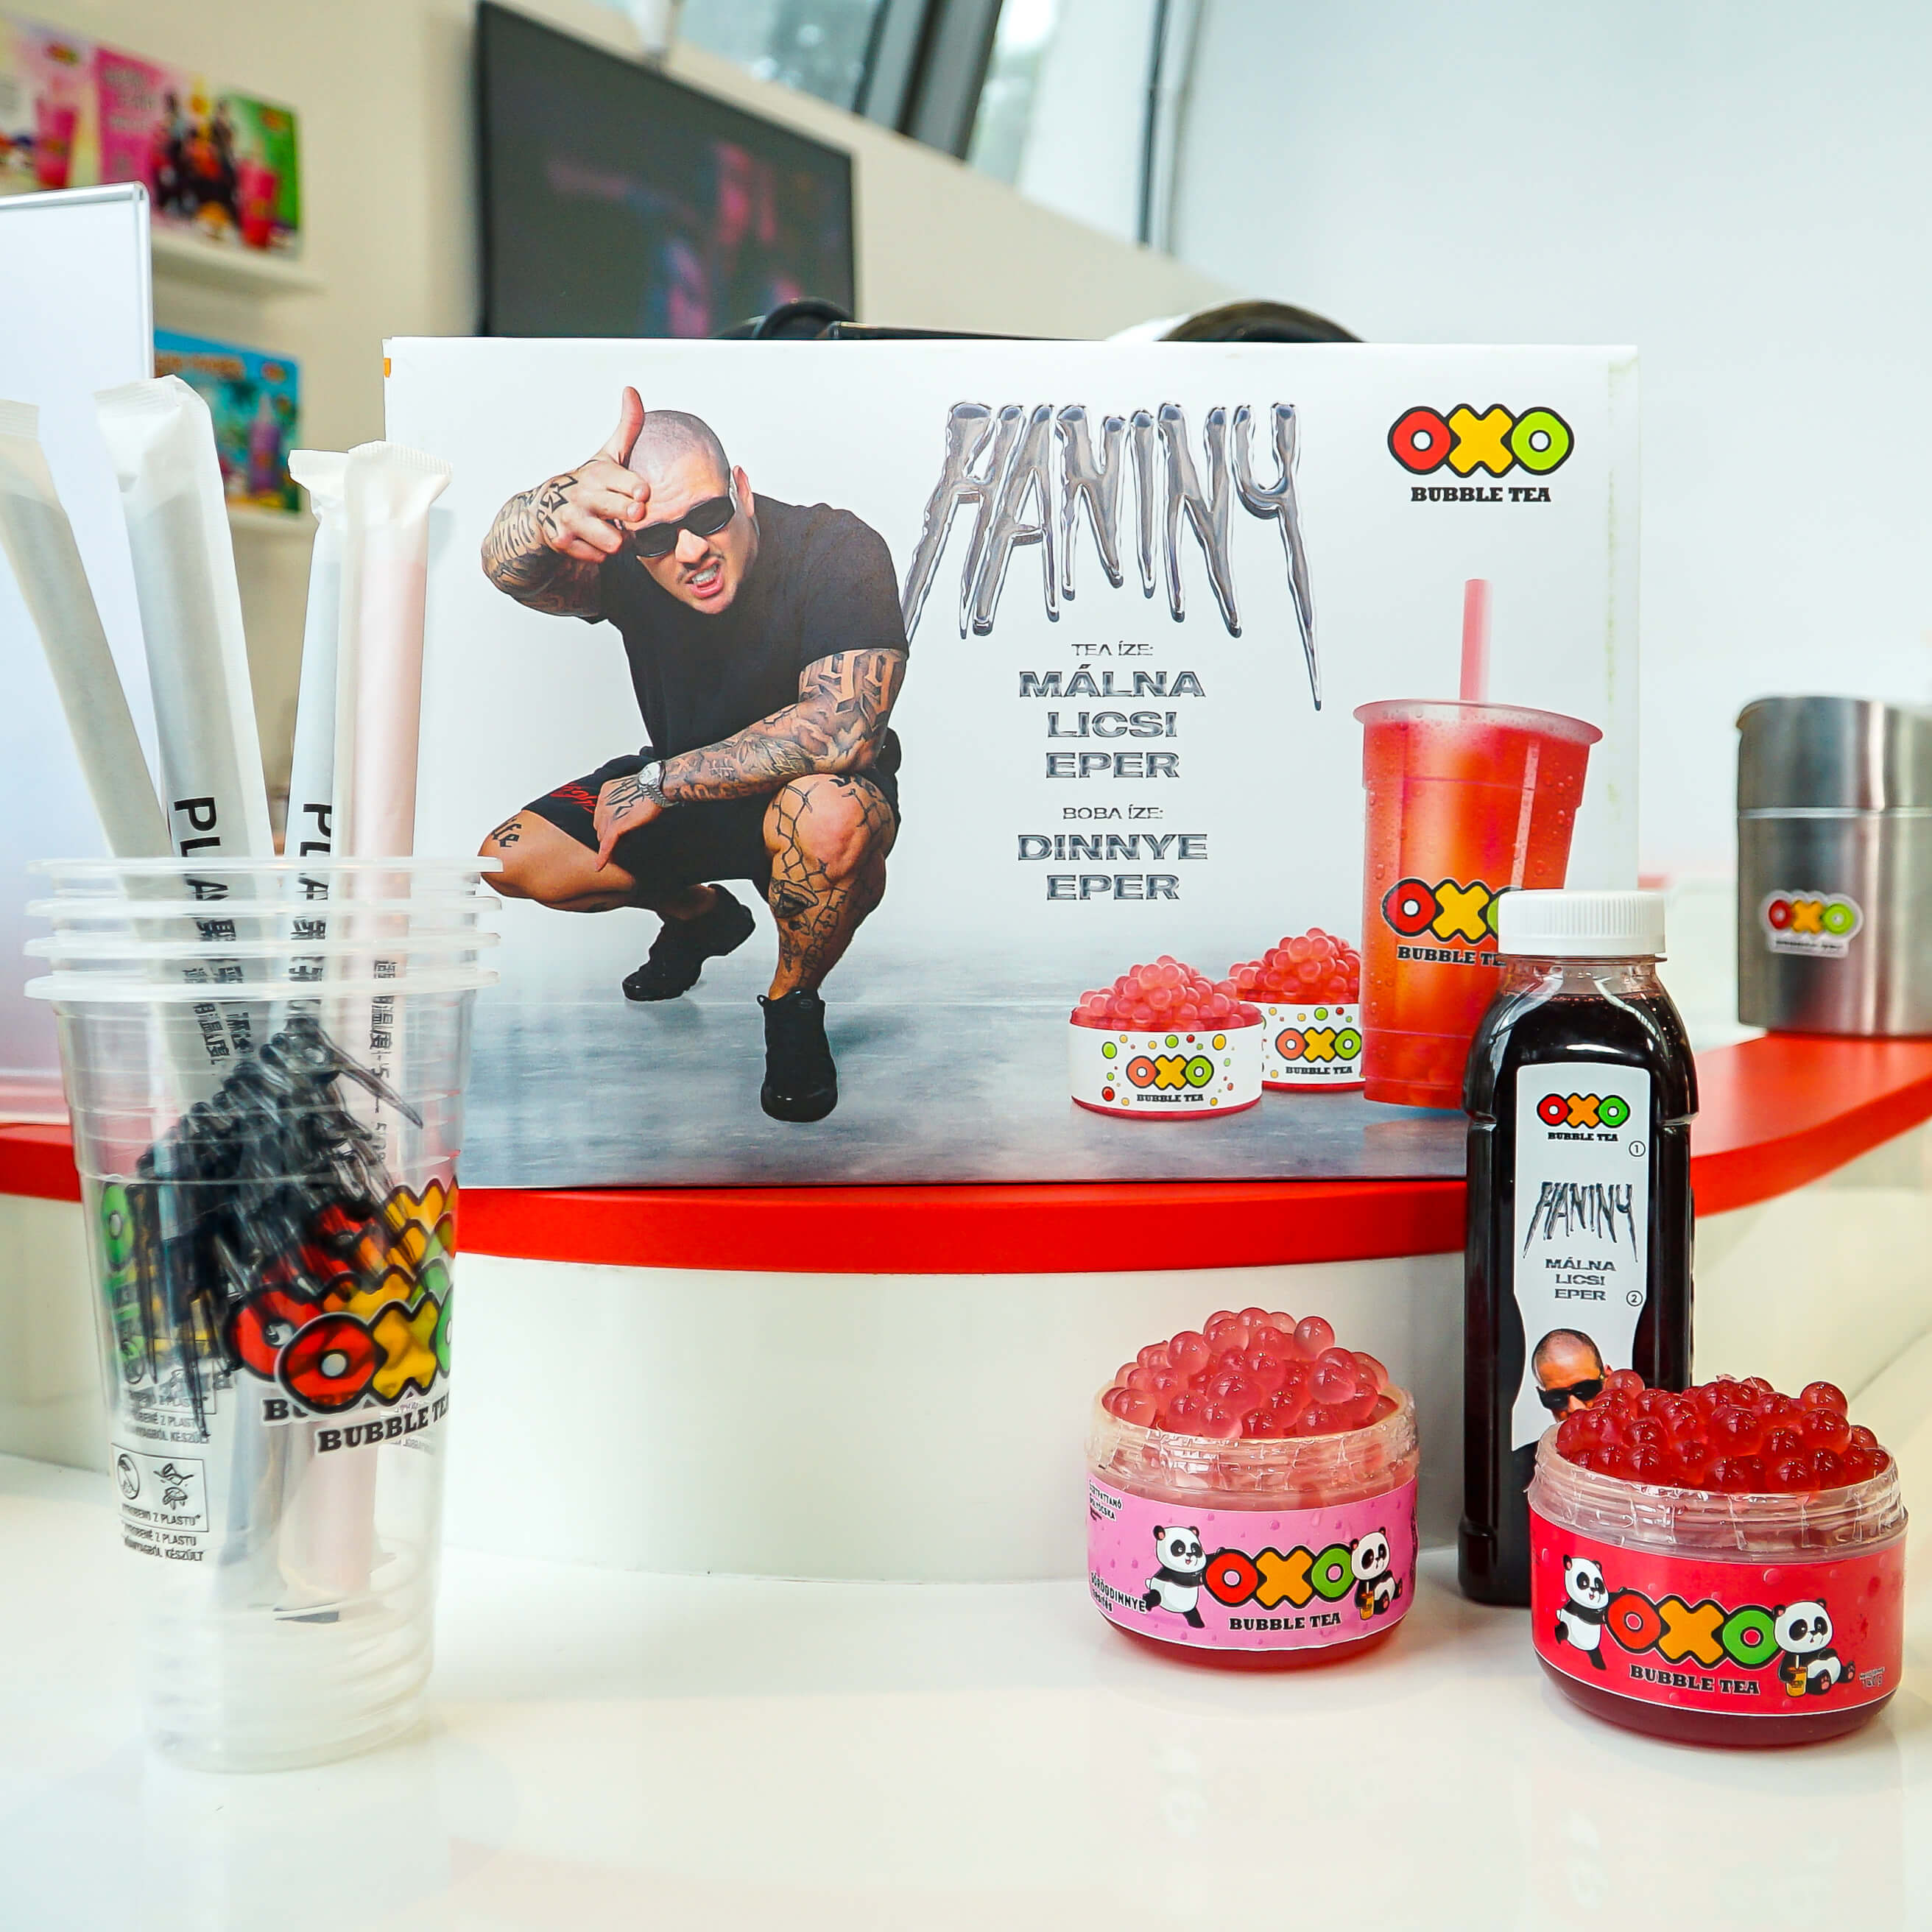 OXO Bubble Tea HANINY Home Kit